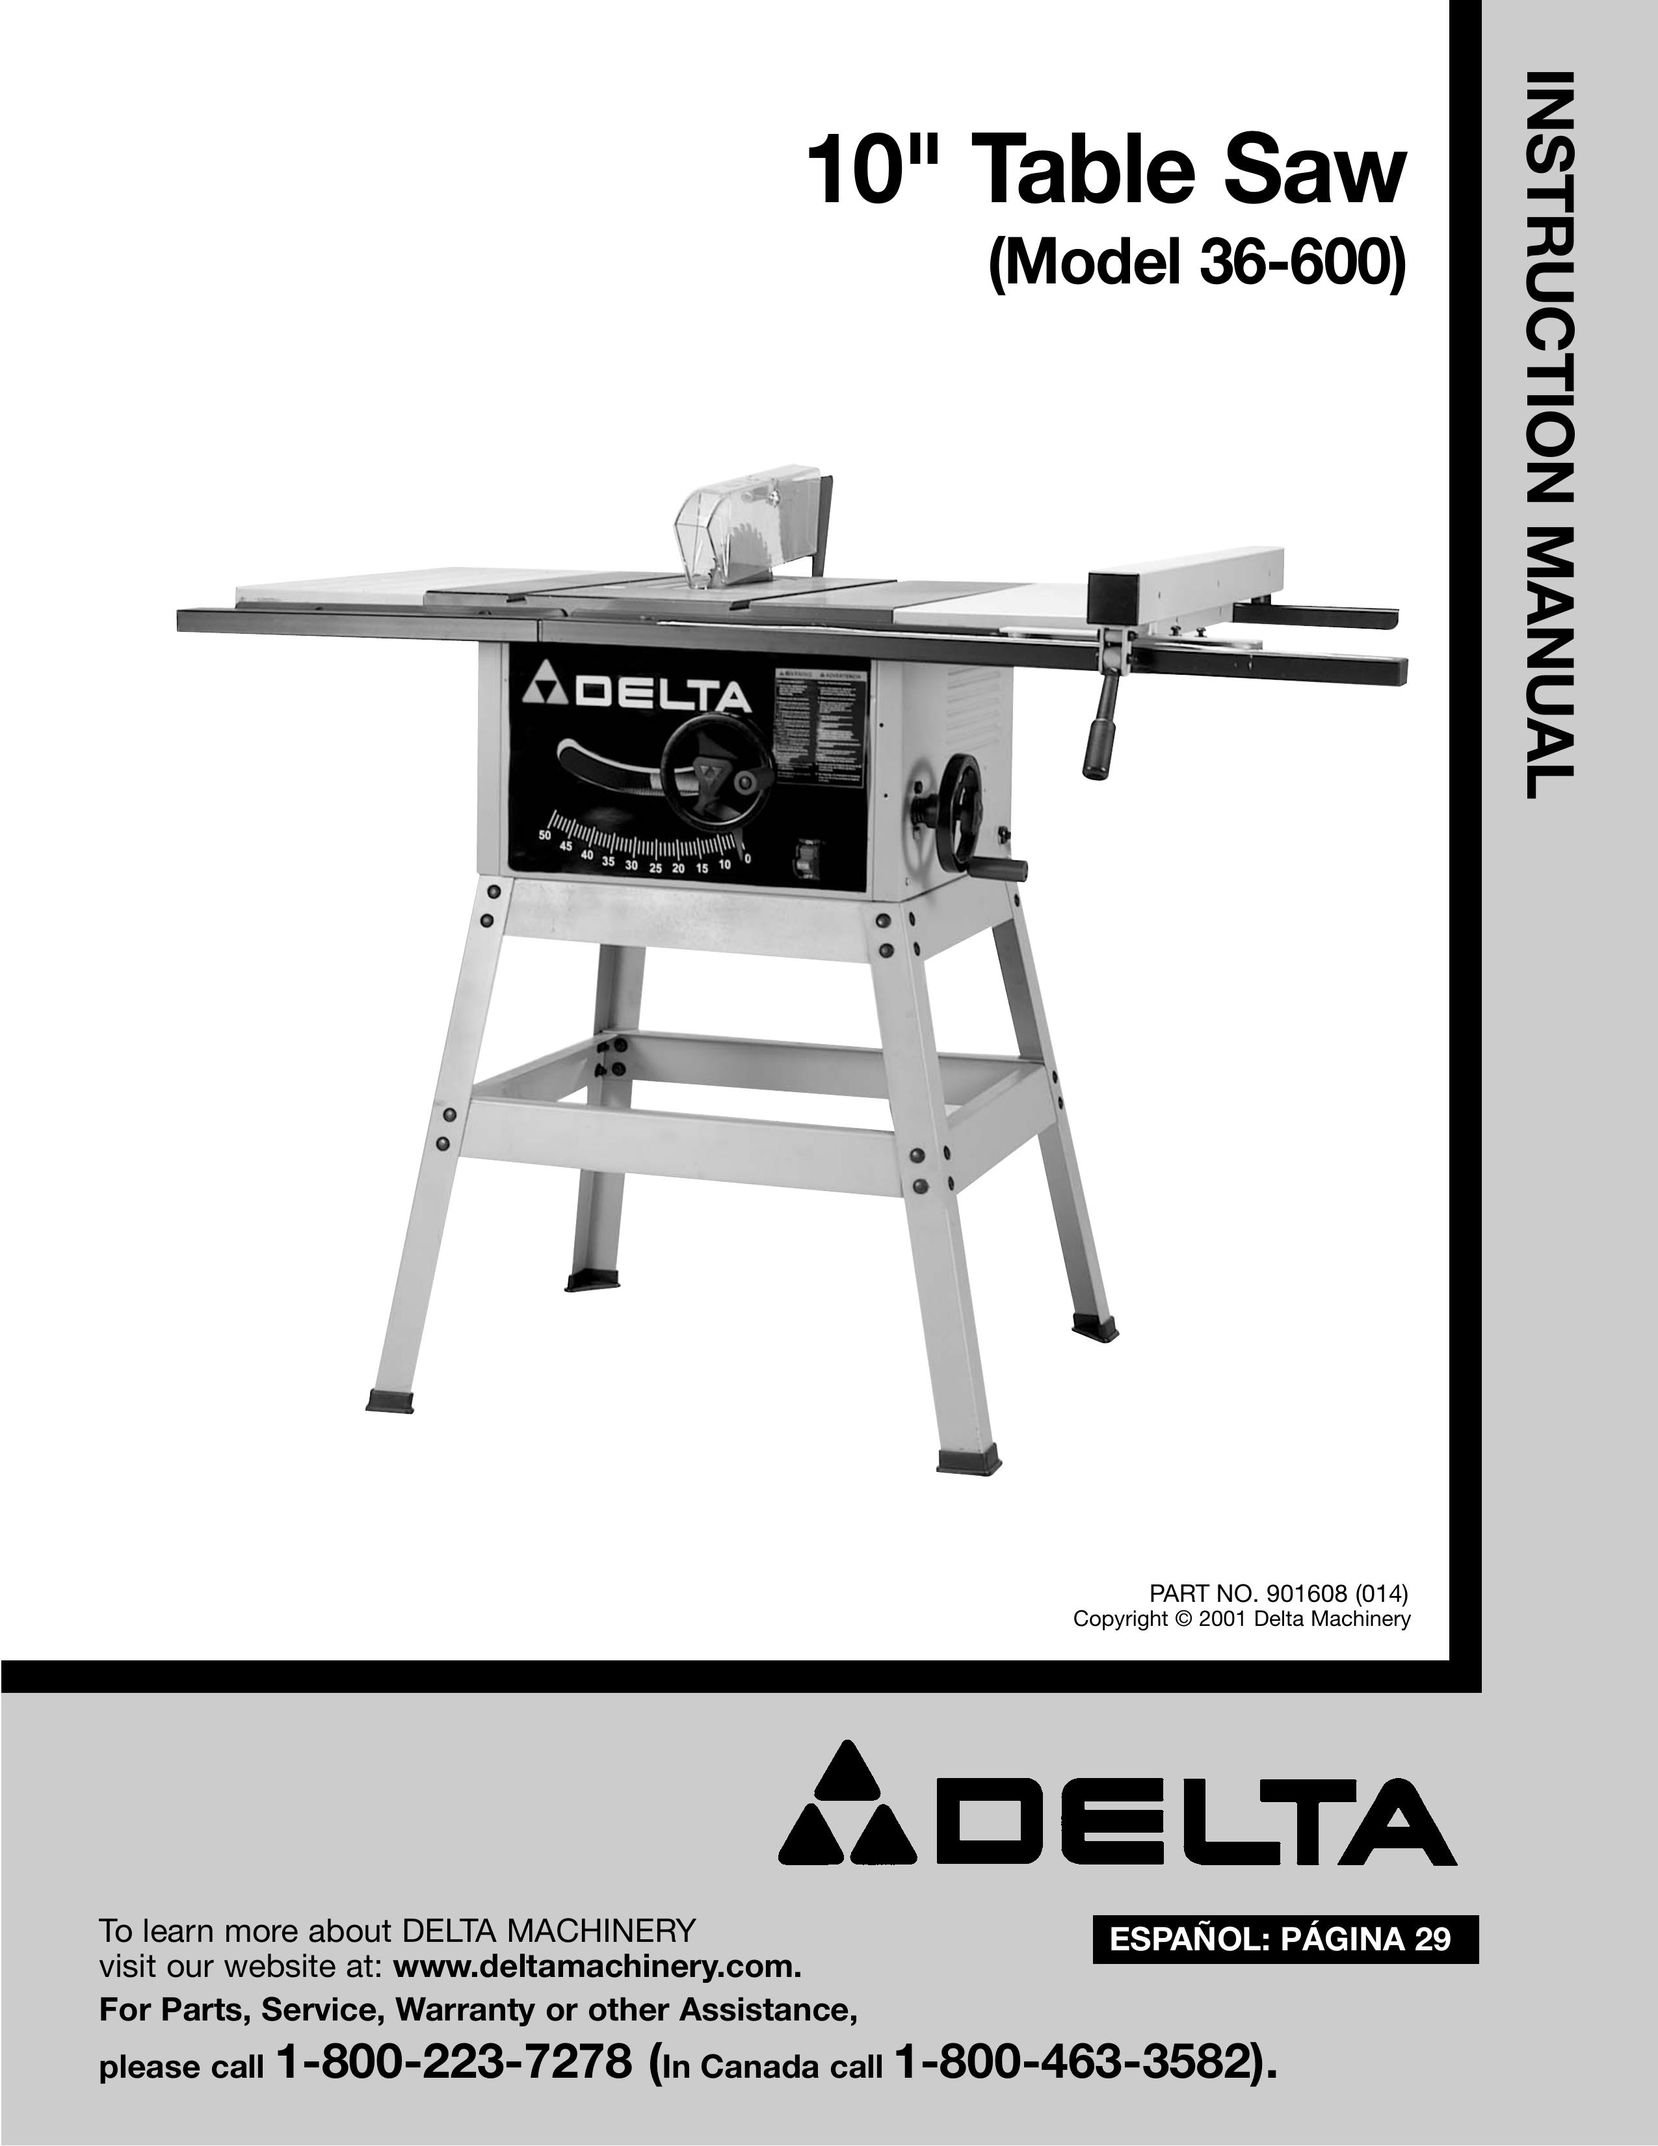 DeWalt 36-600 Saw User Manual